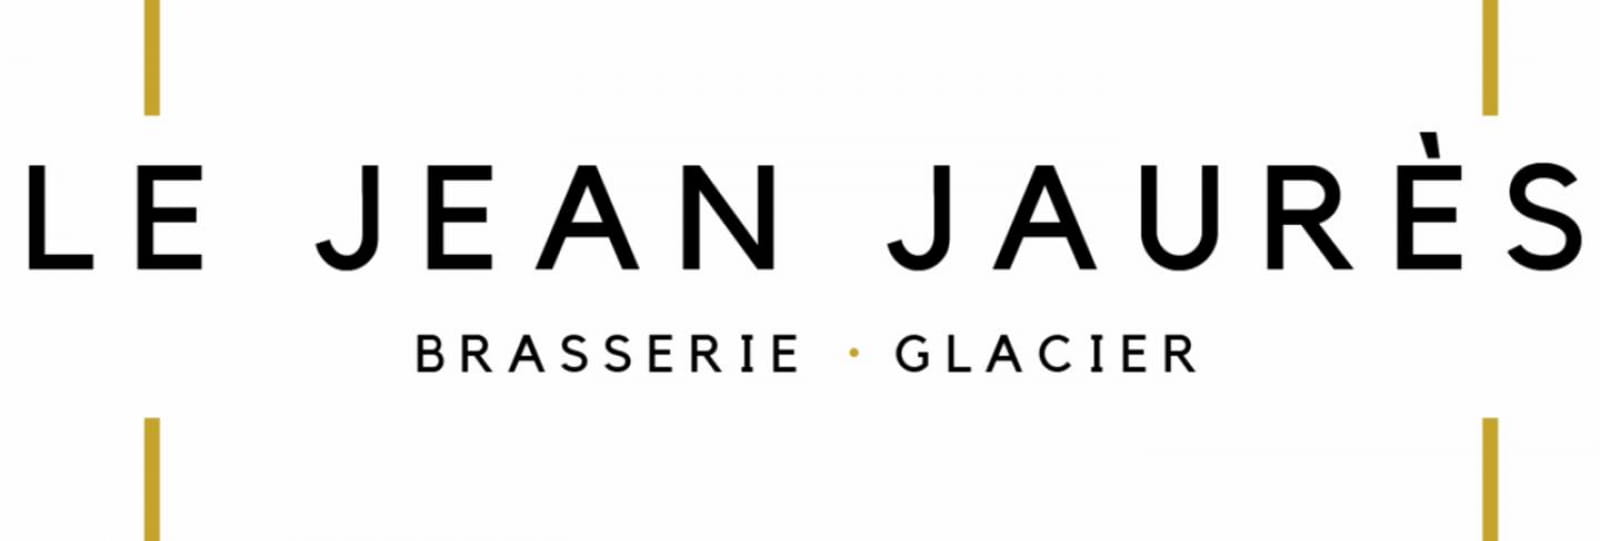 The Jean Jaurès